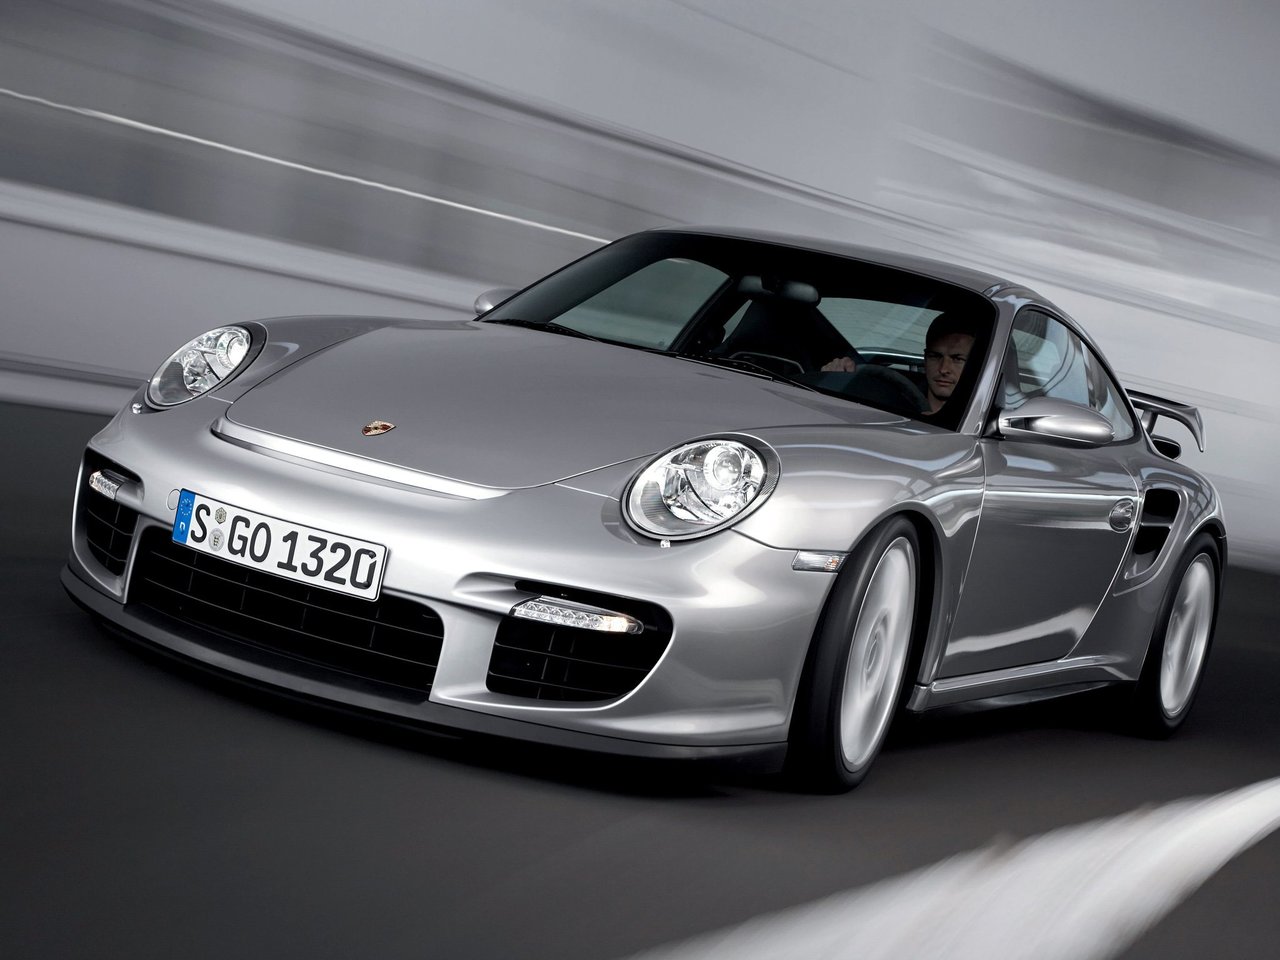 Расход газа одной комплектации купе Porsche 911 GT2. Разница стоимости заправки газом и бензином. Автономный пробег до и после установки ГБО.